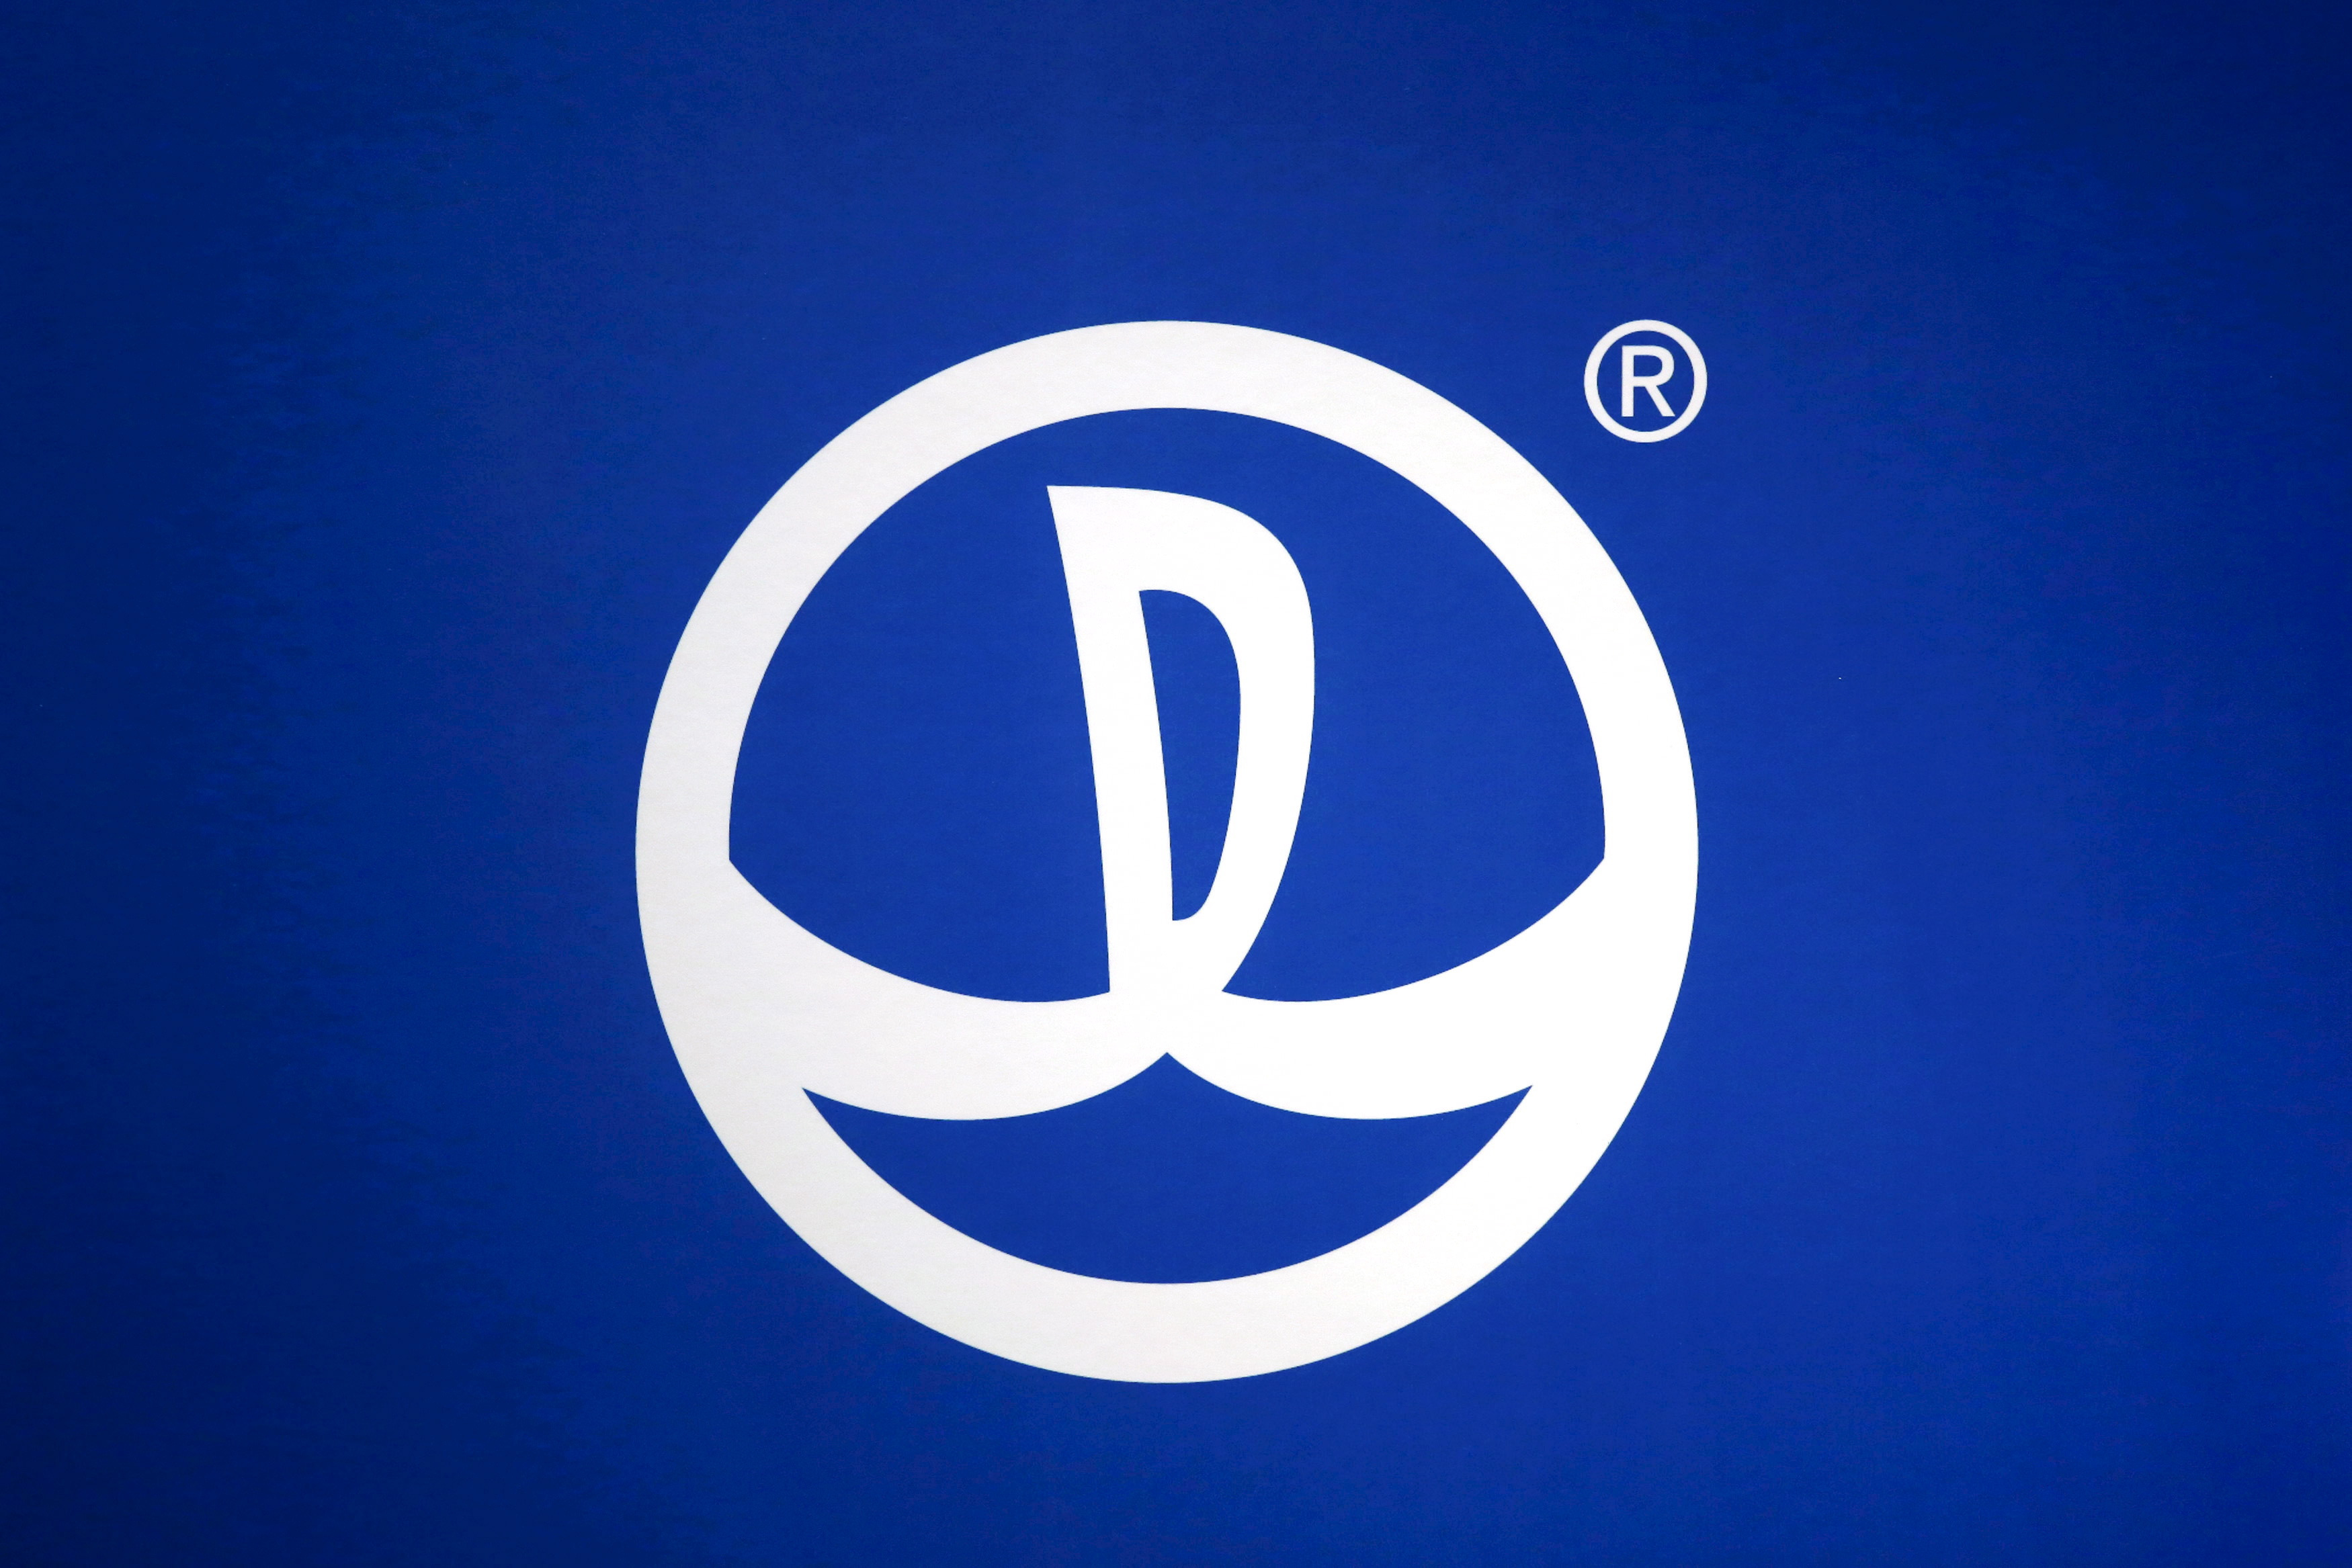 The logo of Dalian Wanda Commercial Properties in Hong Kong